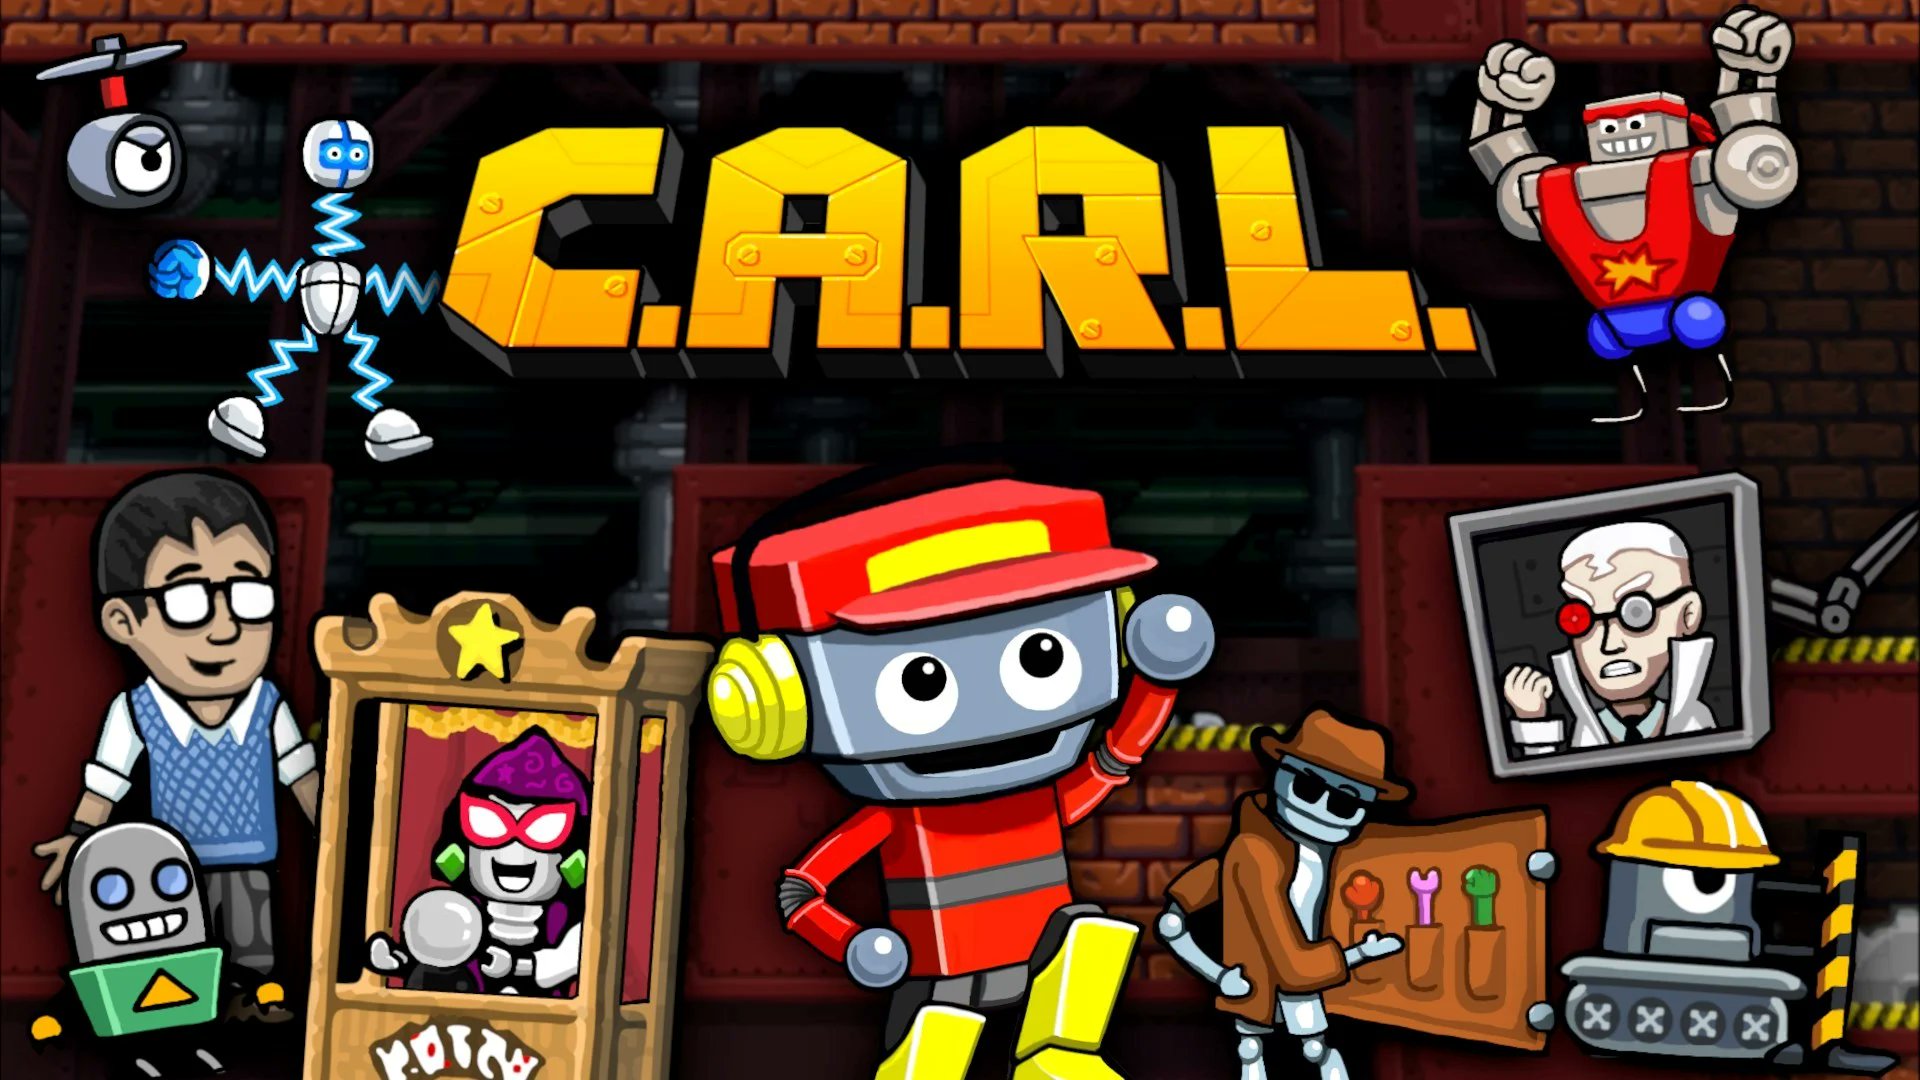 Carl Gaming